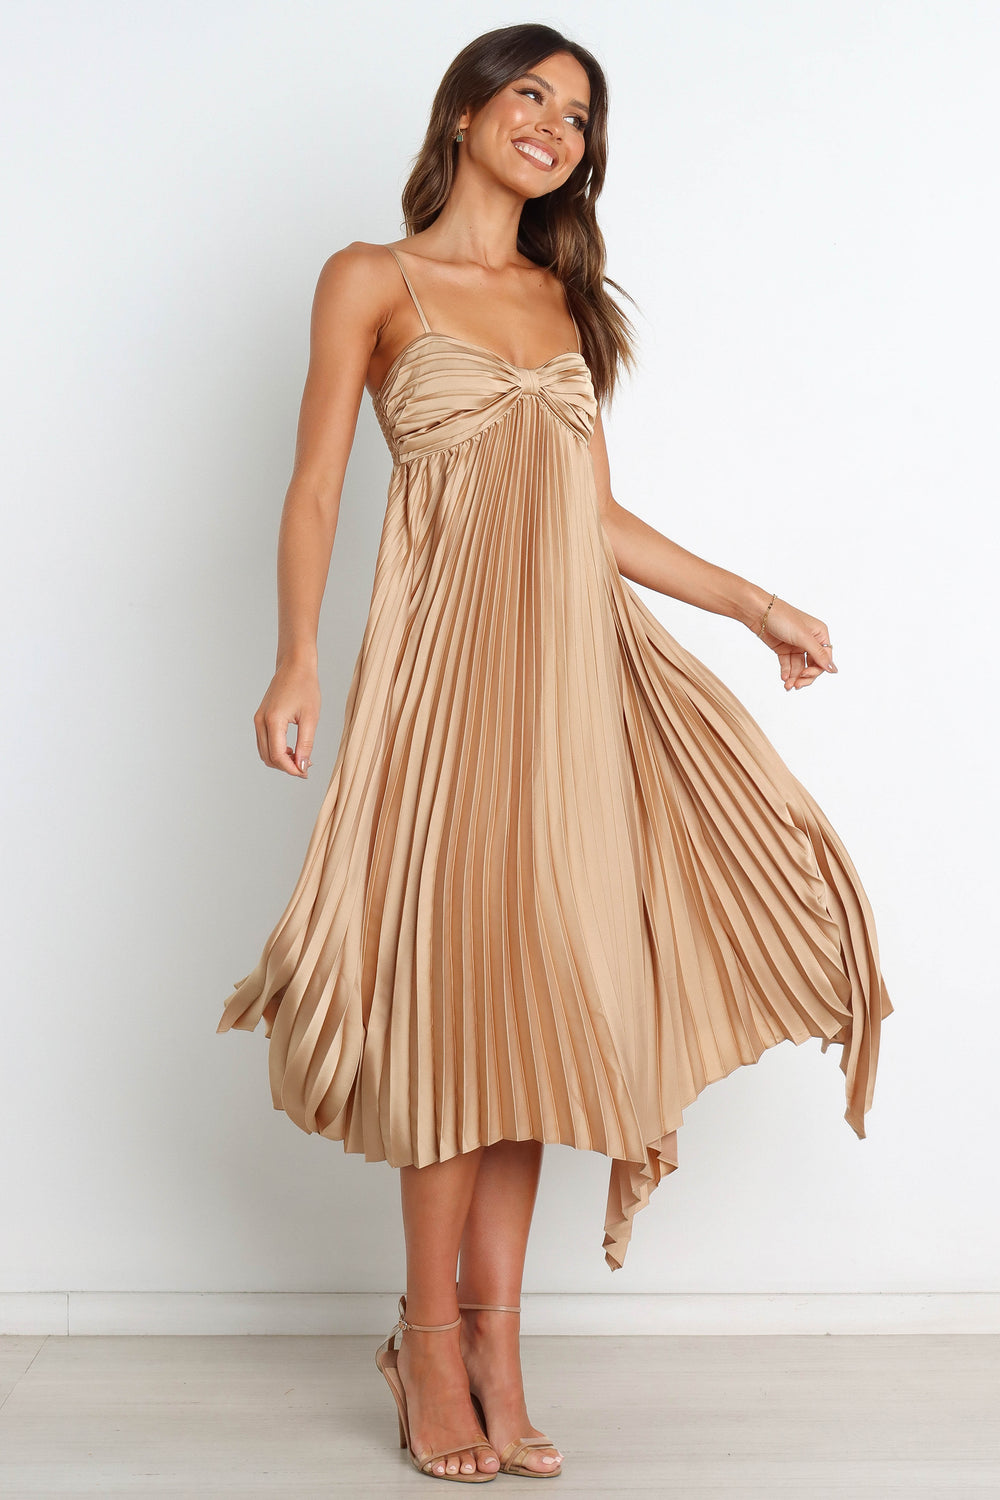 DRESSES Vikki Dress - Gold